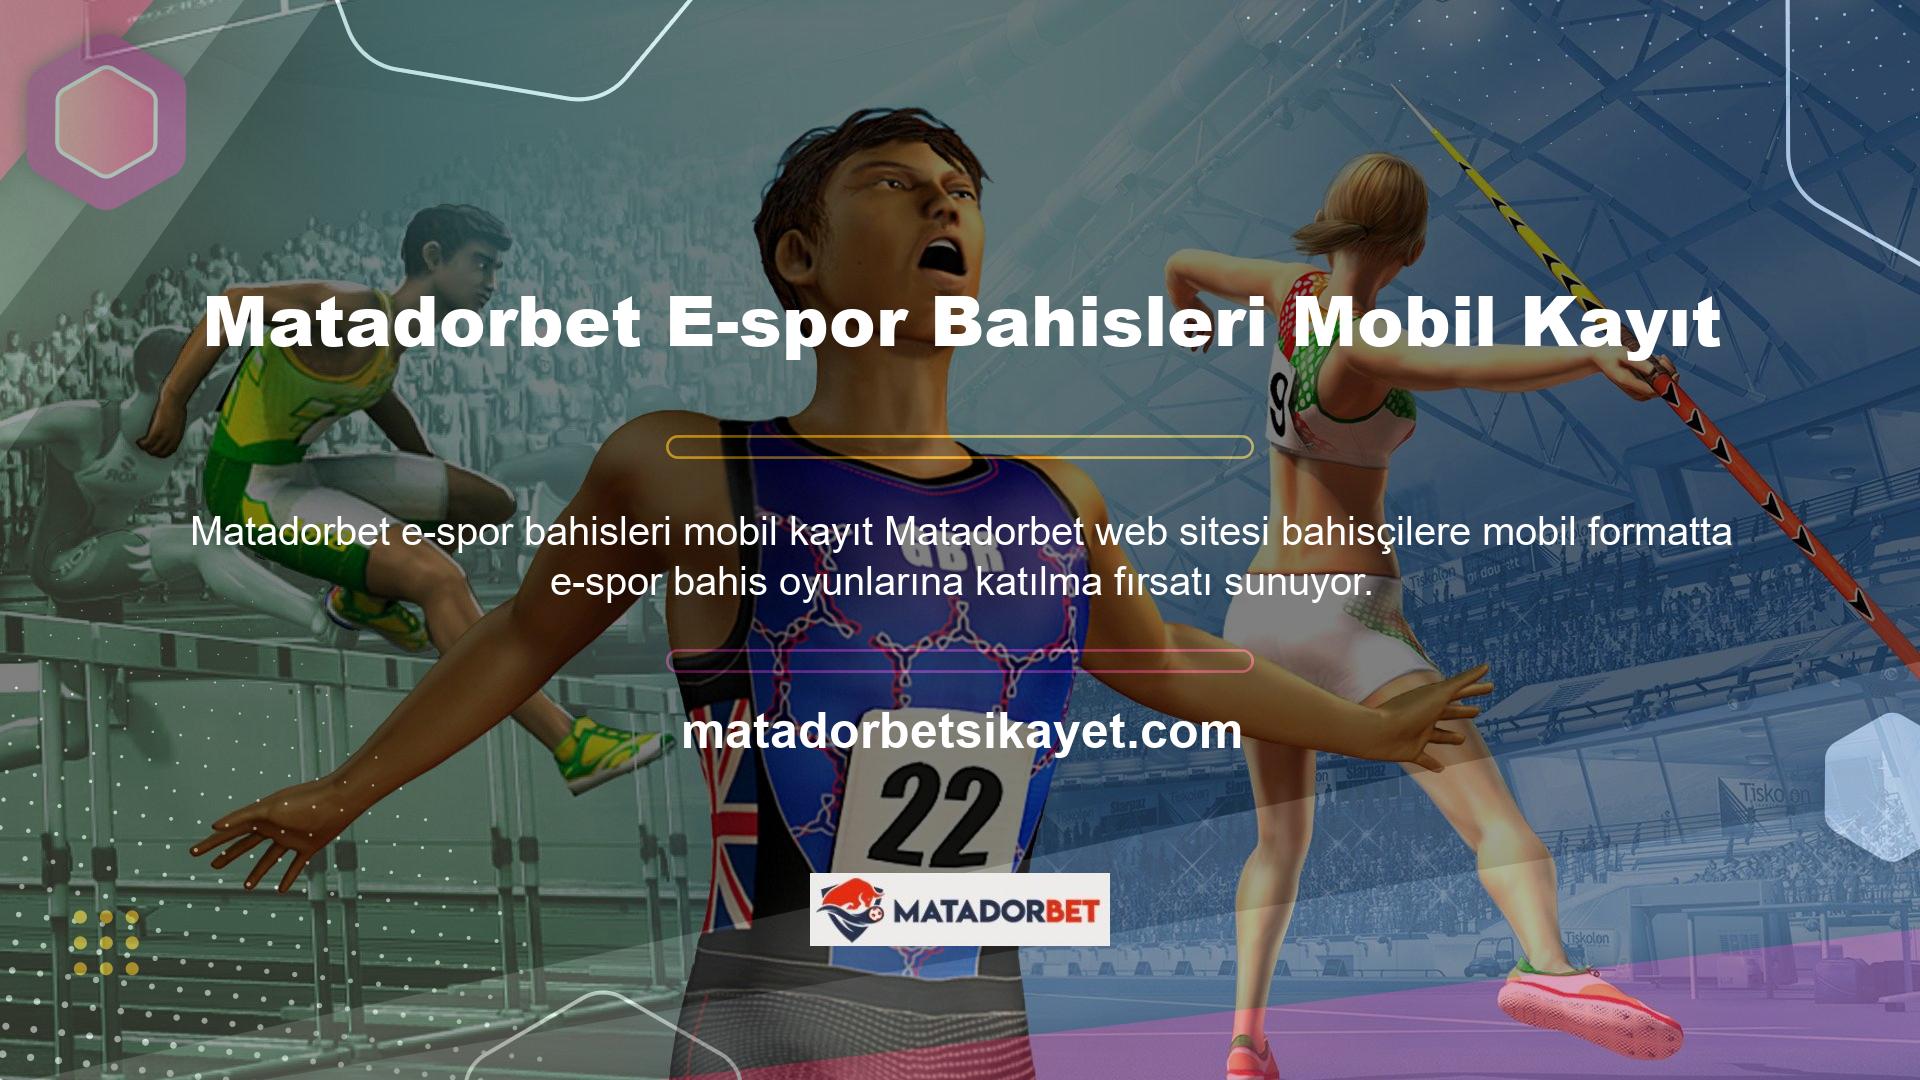 Matadorbet Login Mobile cihazı, Matadorbet canlı e-spor bahis oyunlarını mobil kayıt kullanarak etkili bir şekilde oynamanın çok kolay bir yolunu sunuyor